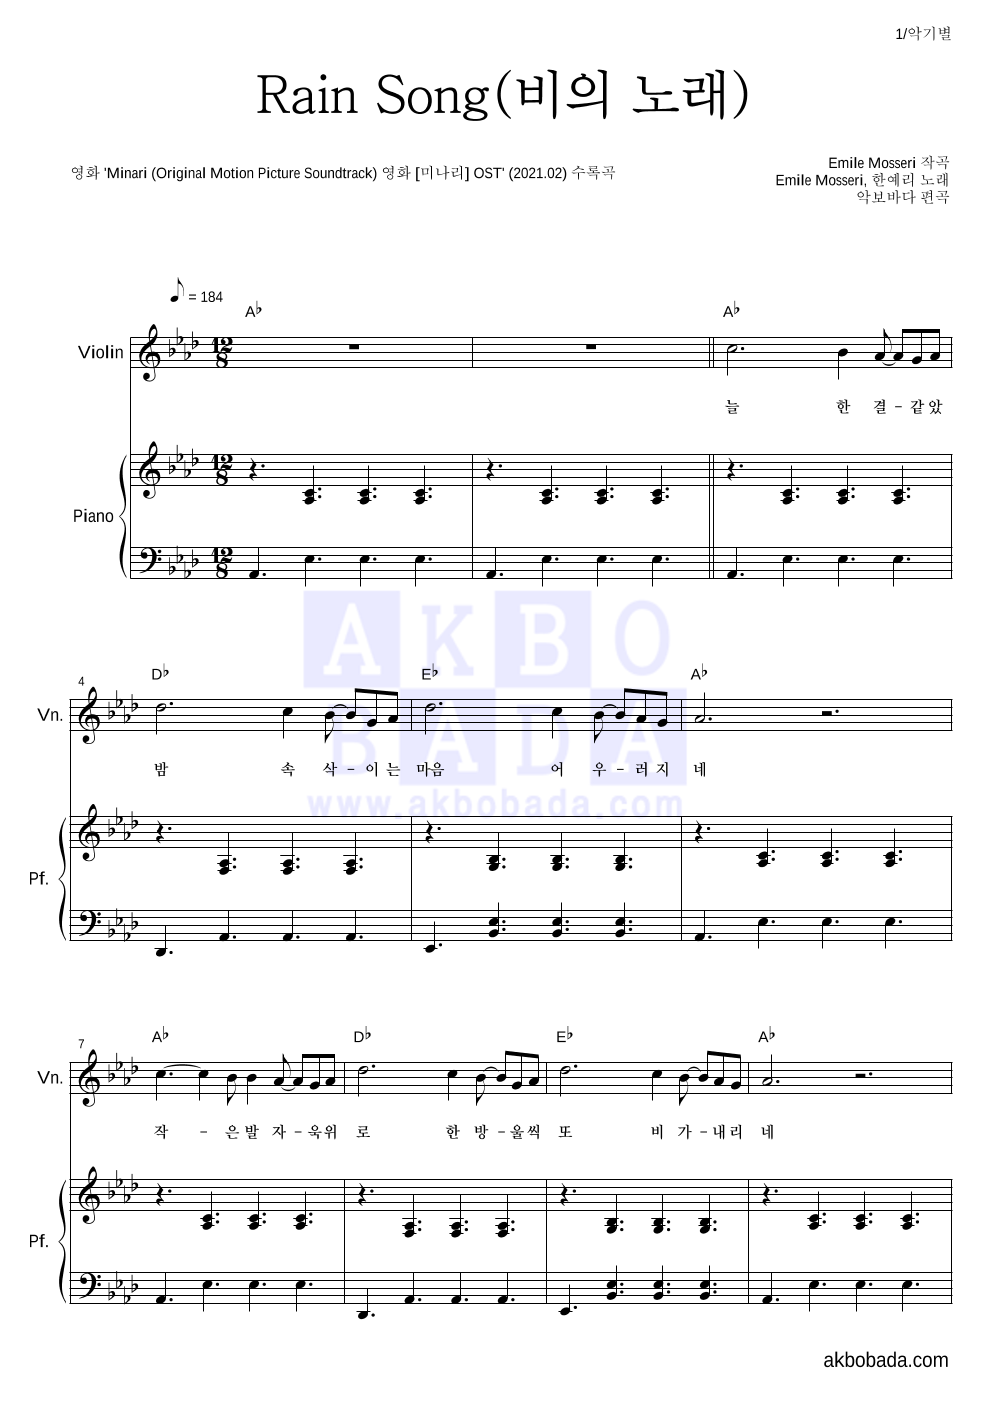 Emile Mosseri,한예리 - Rain Song(비의 노래) 바이올린&피아노 악보 